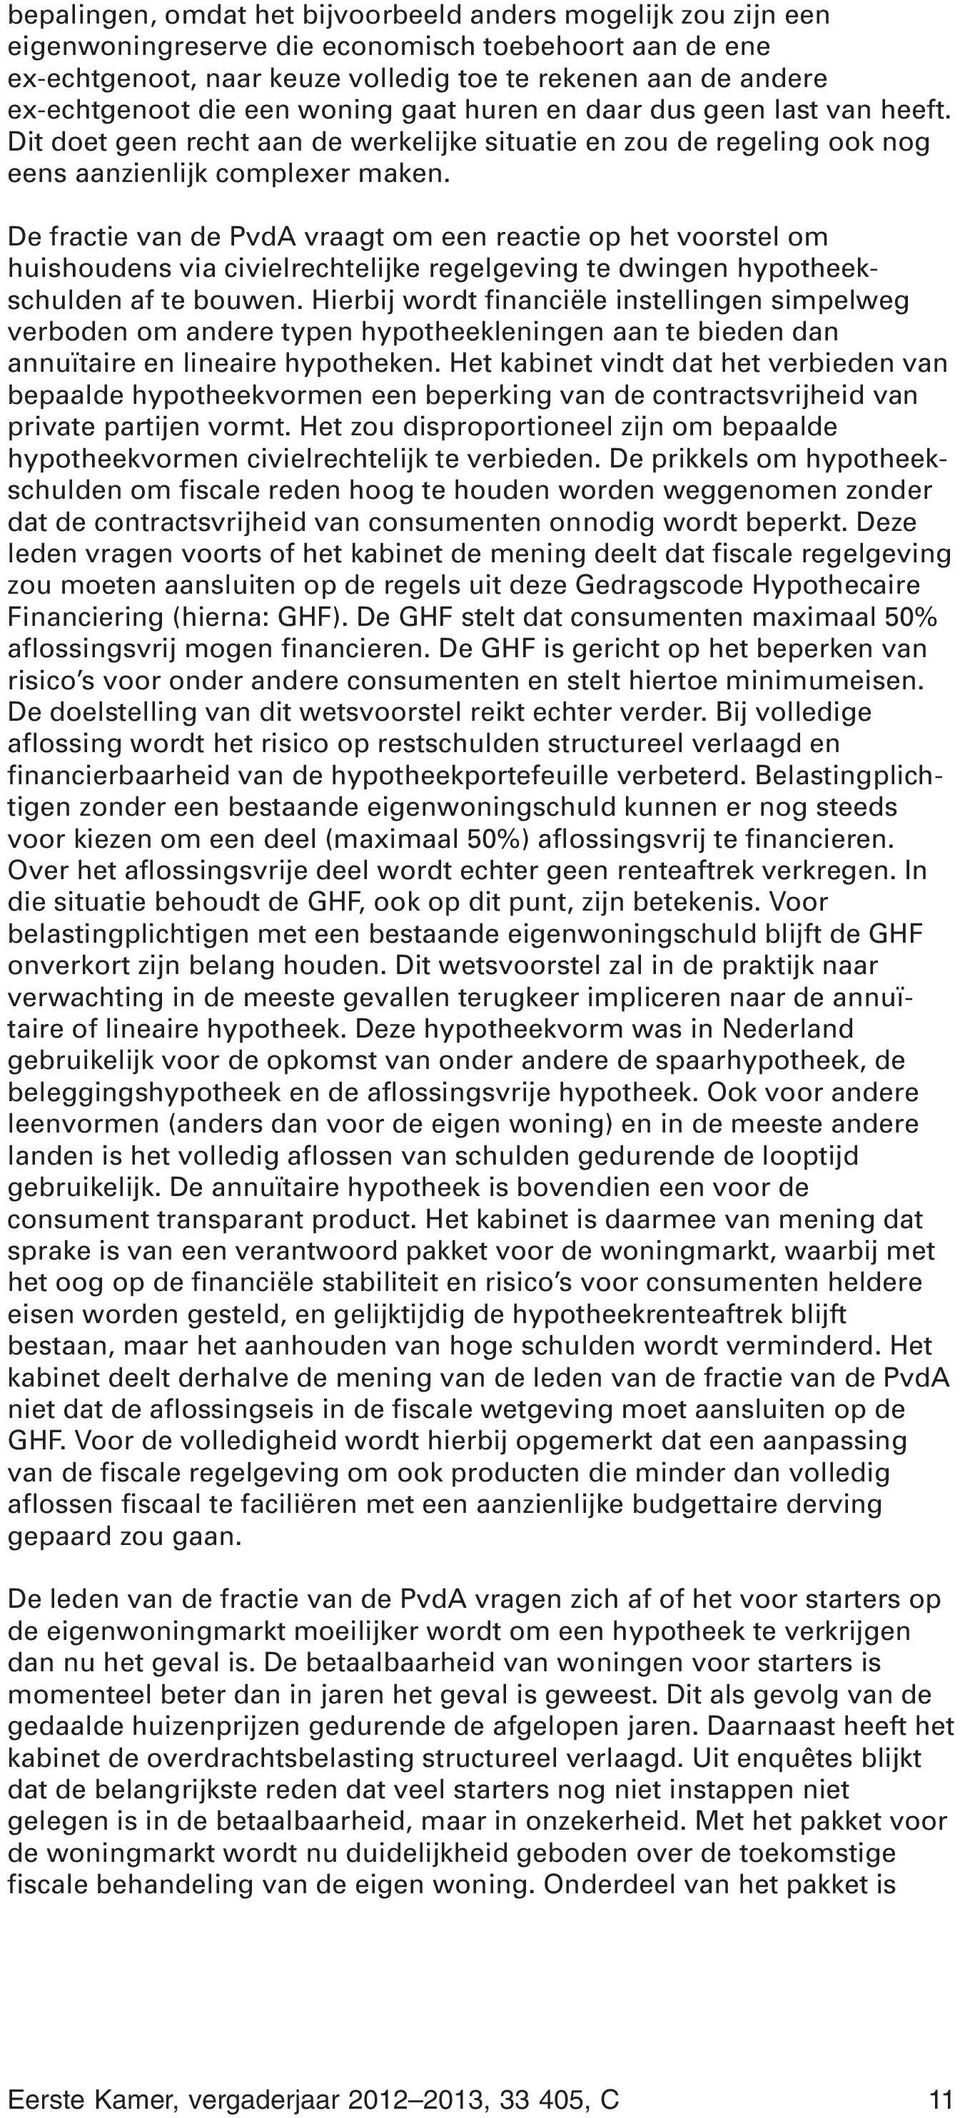 De fractie van de PvdA vraagt om een reactie op het voorstel om huishoudens via civielrechtelijke regelgeving te dwingen hypotheekschulden af te bouwen.